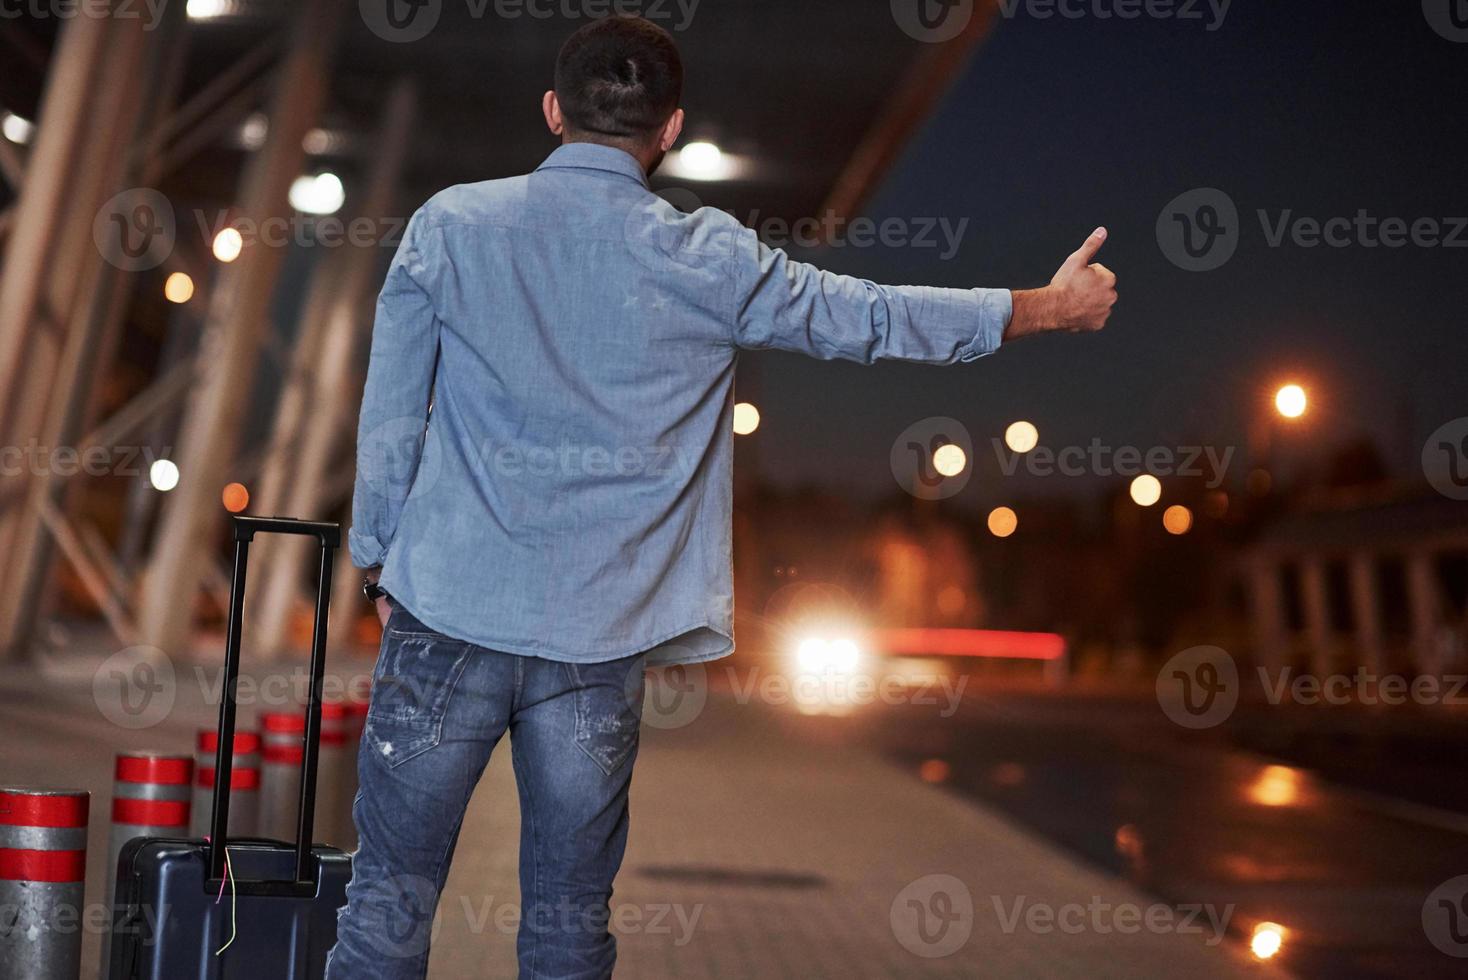 det går bil på gatulinjen. korthårig man i jeans och skjorta med ett bagage försöker fånga bilen foto